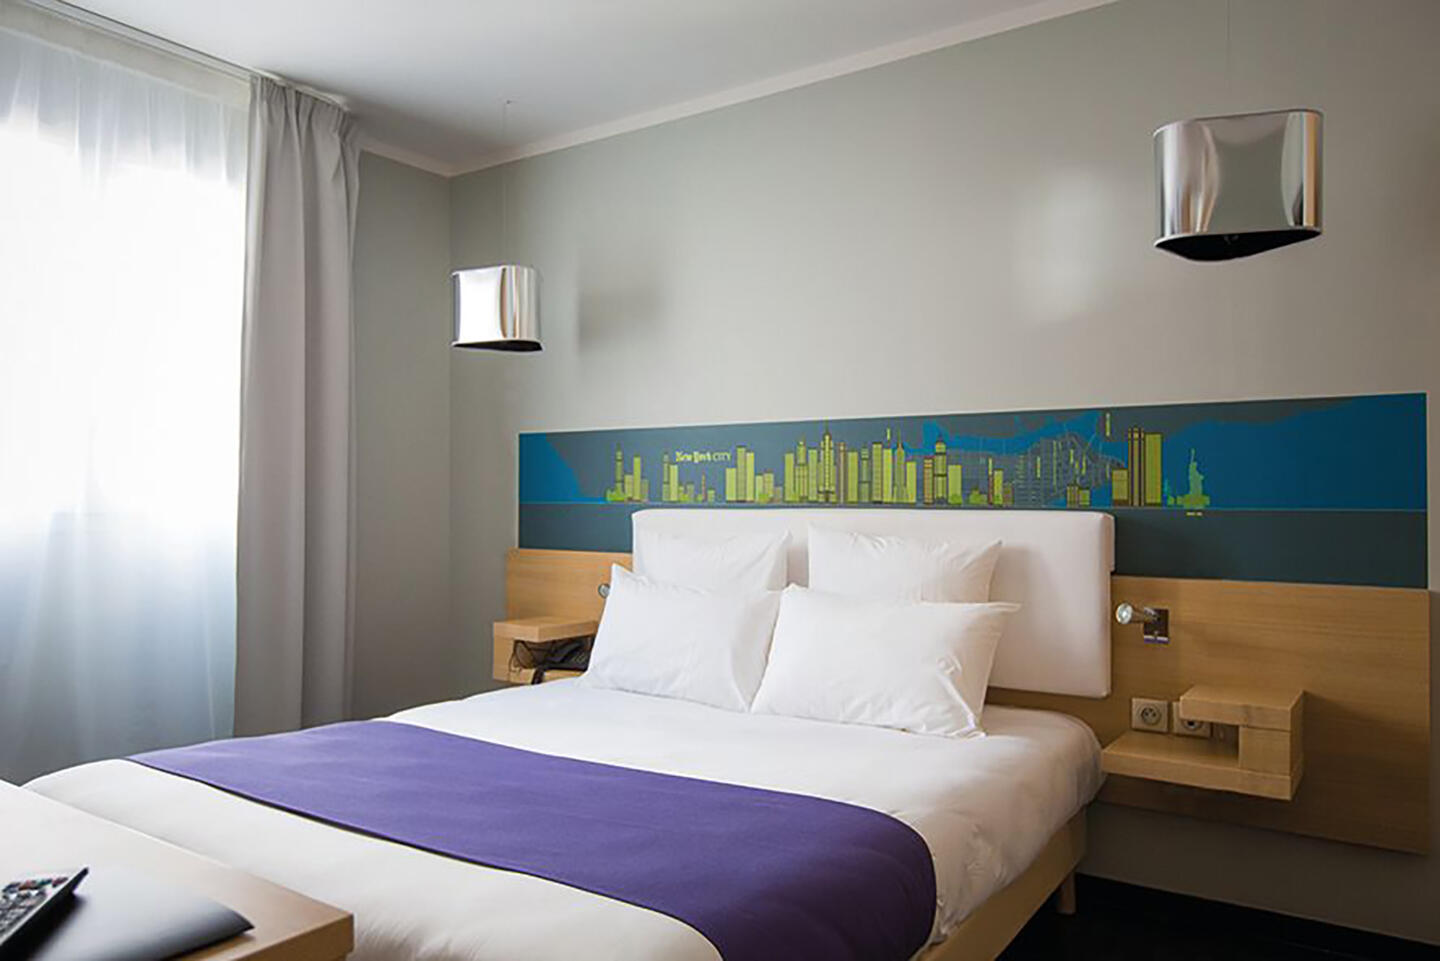 Habitación de apartotel contemporáneo Appart'City con una gran cama doble, ropa de cama color ciruela, almohadas esponjosas y un cabecero artístico con un horizonte urbano, para una estancia urbana con confort y estilo.